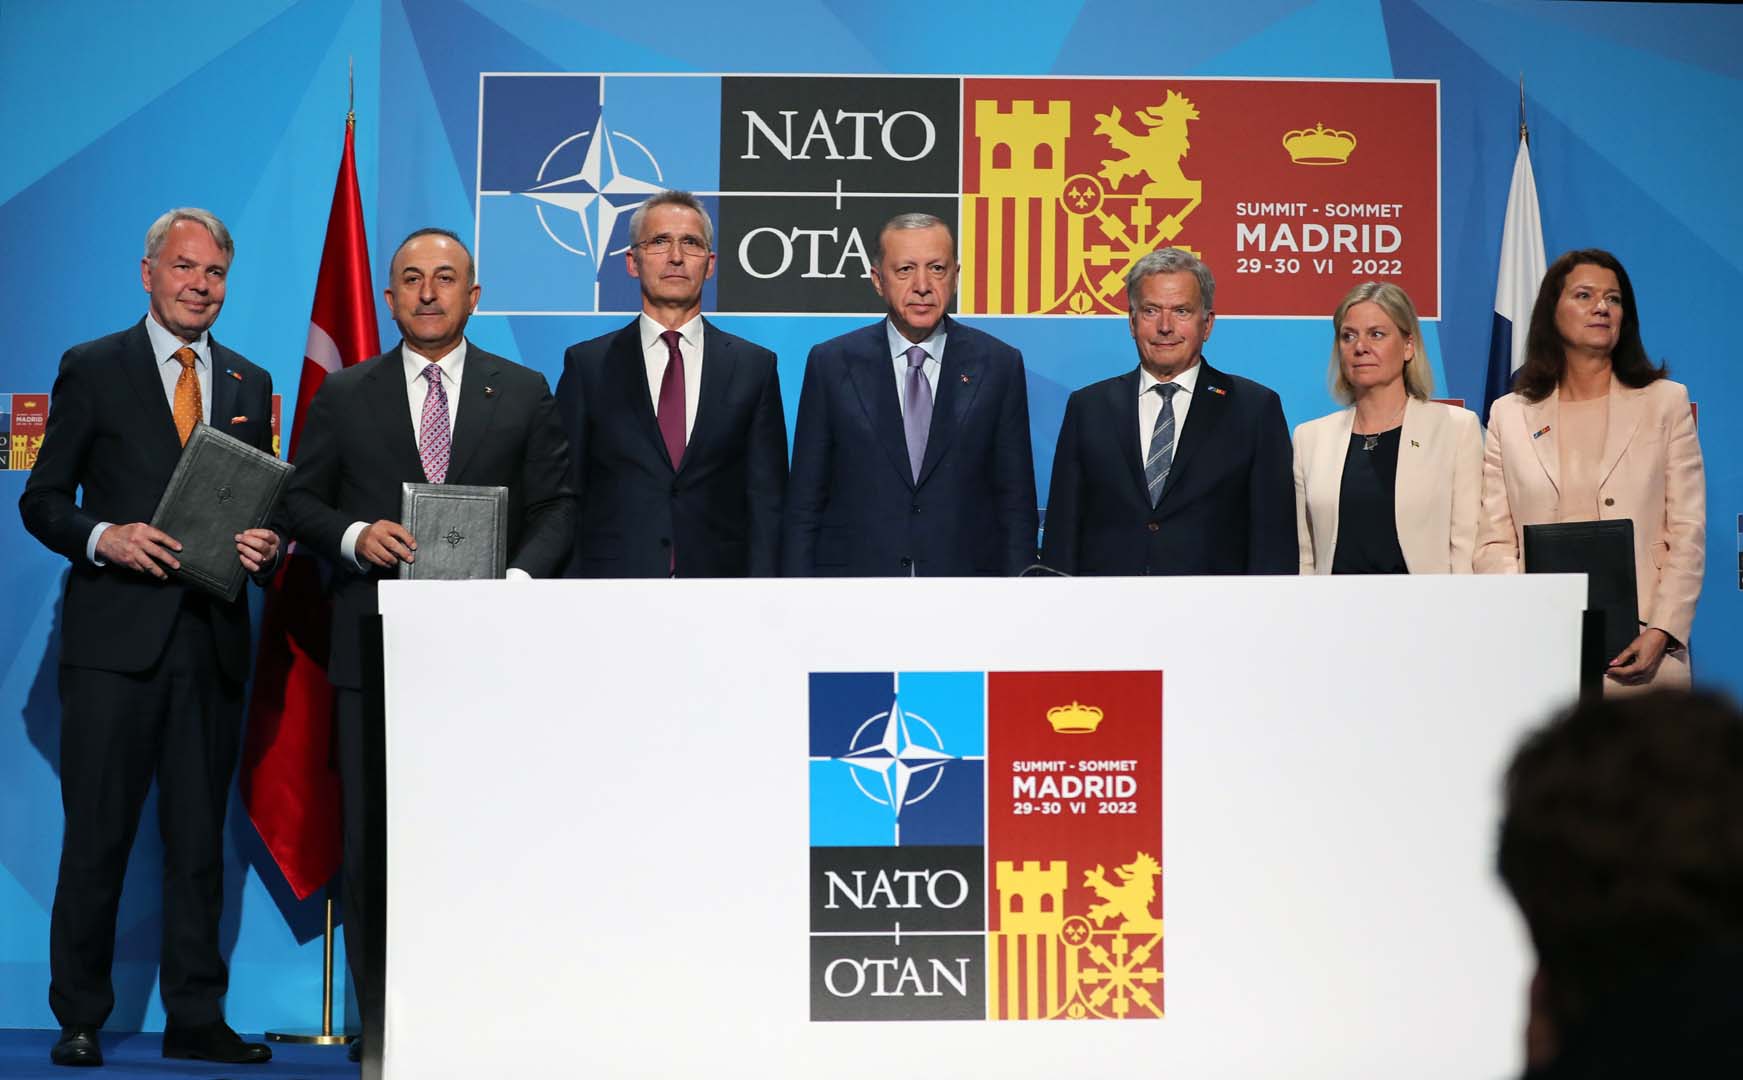 NATO görüşmelerinde mutabakata varıldı! 3 ülke arasında ortak bildiri yayınlandı!